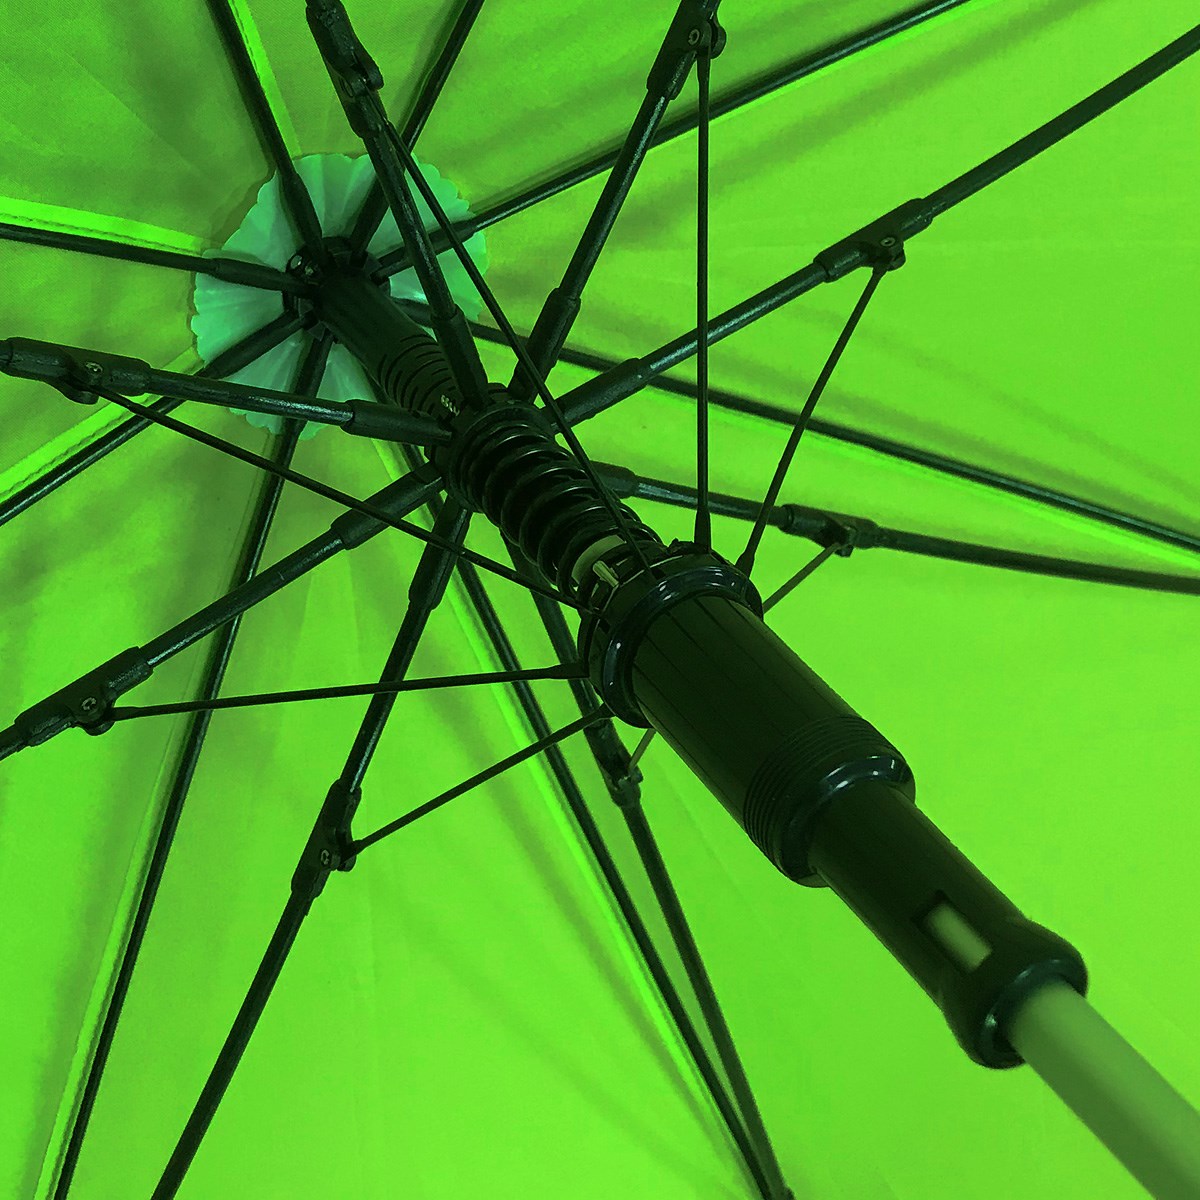 晴雨兼用・男女兼用 UVゴルフ傘(傘（銀パラ）)|TOBIEMON(飛衛門) T-UM-GRの通販 - GDOゴルフショップ(0000639893)